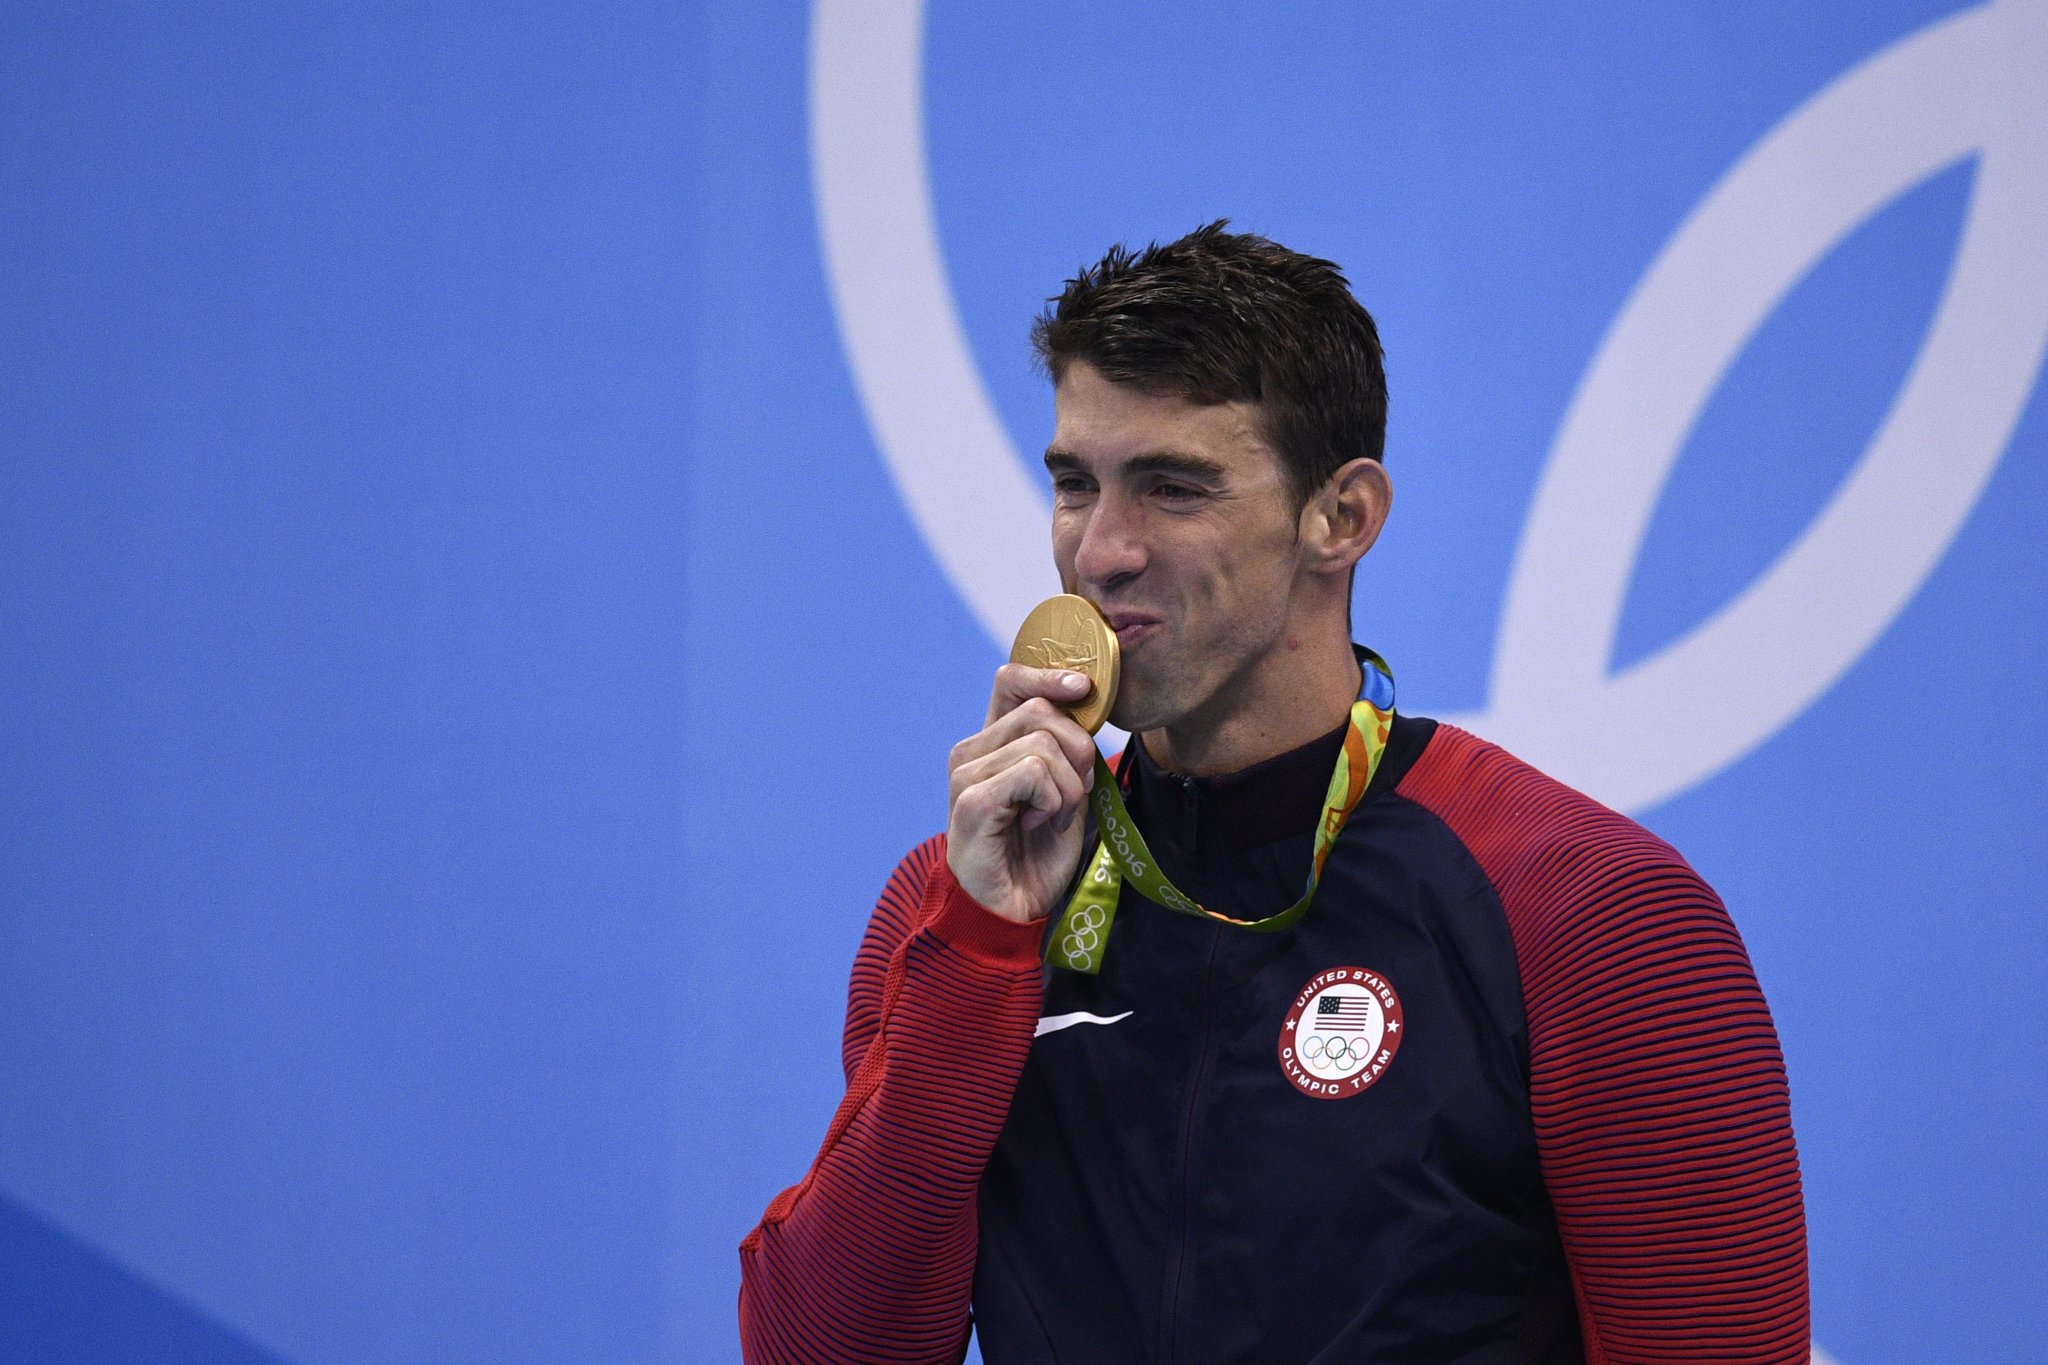 Michael Phelps;